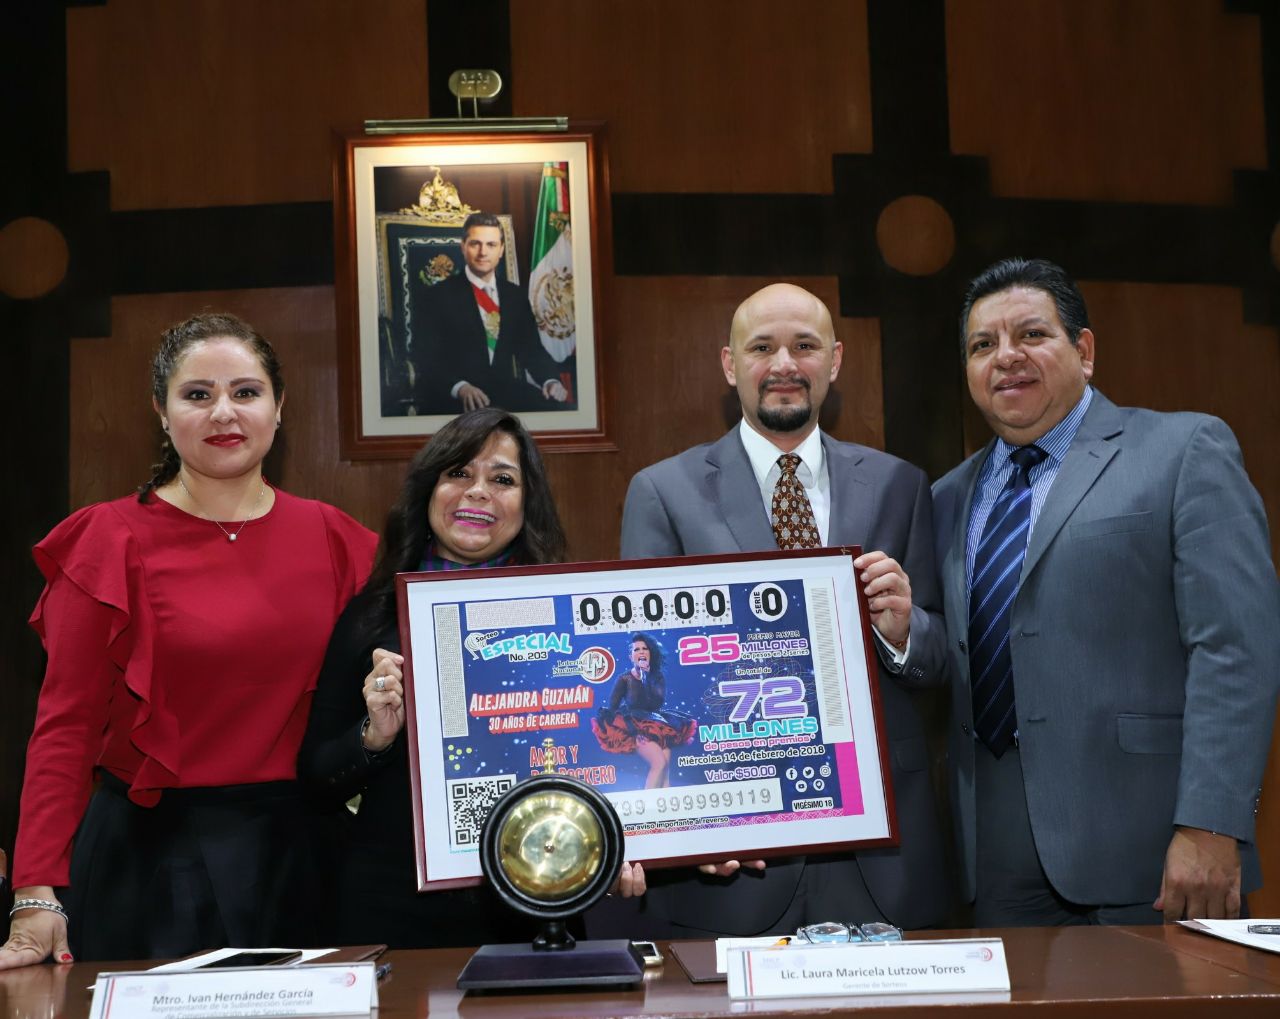 Fotografía de Laura Maricela Lutzow, Gerente de Sorteos, Jorge Arturo Iván Hernández, con la versión ampliada del billete del Sorteo. 